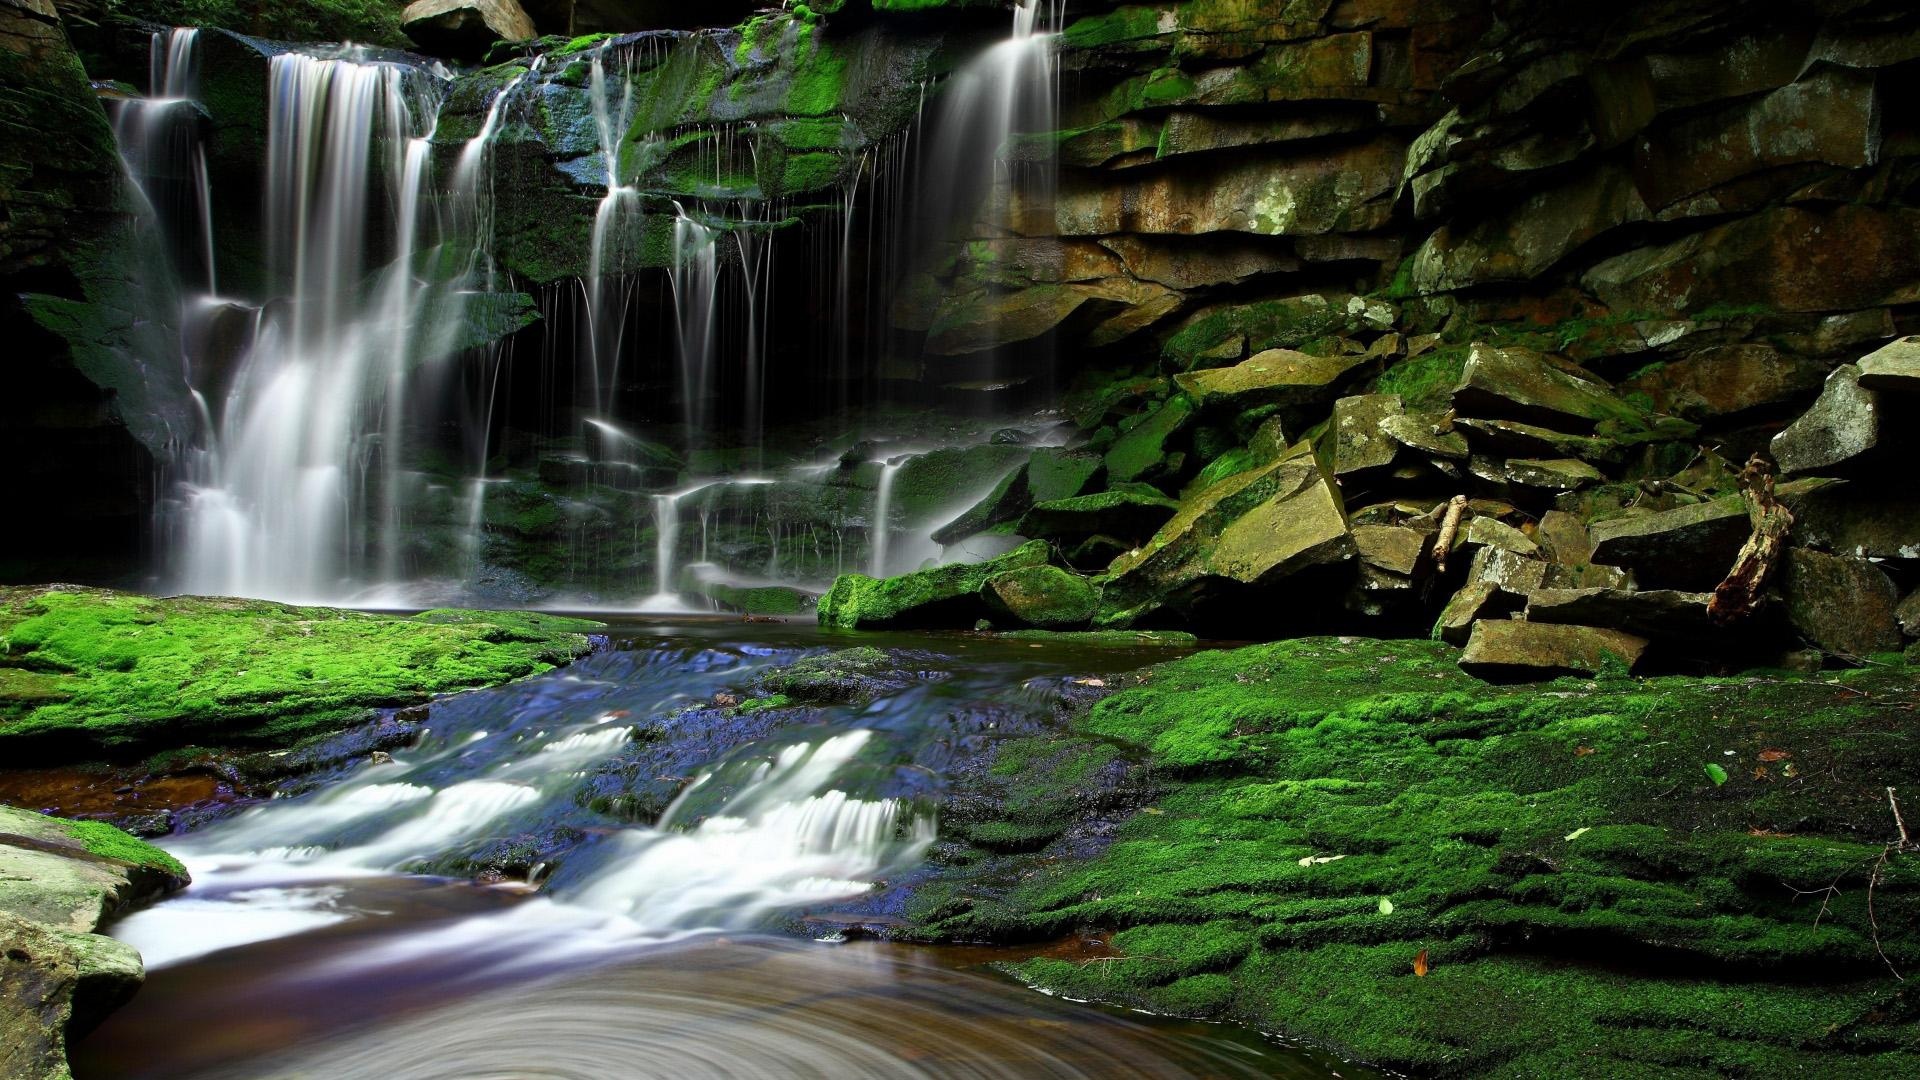 岩石,瀑布,水,溪,石头,苔藓,天然森林景观桌面壁纸高清原图查看